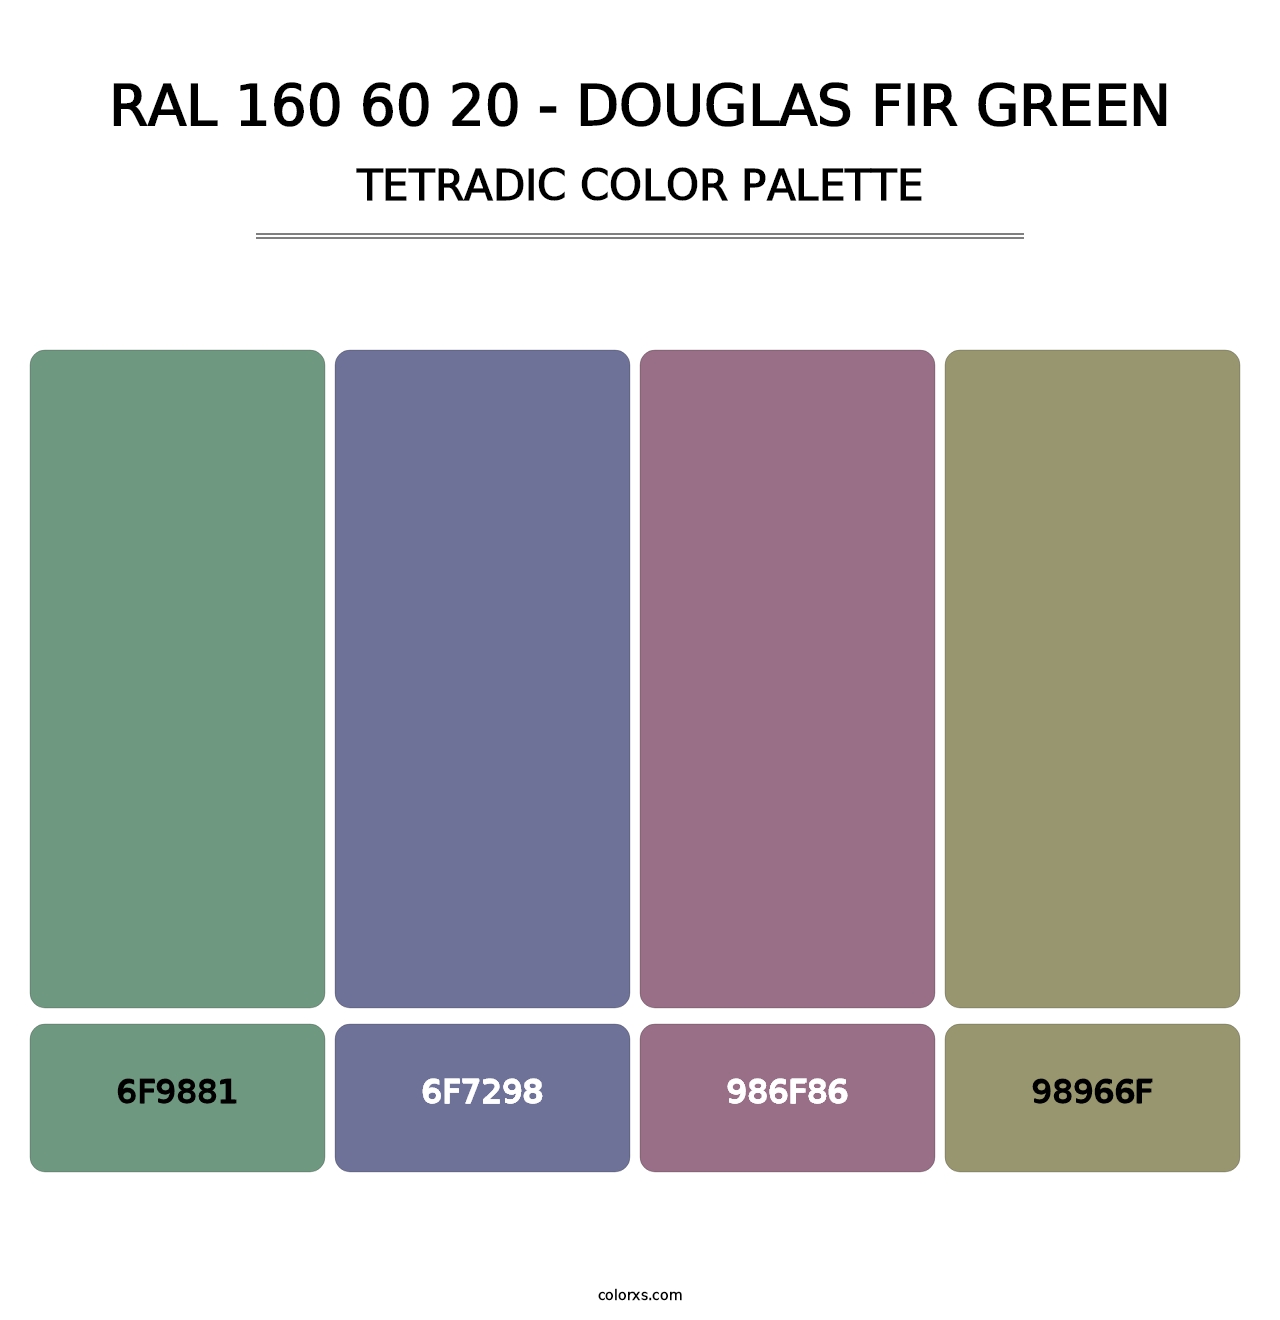 RAL 160 60 20 - Douglas Fir Green - Tetradic Color Palette